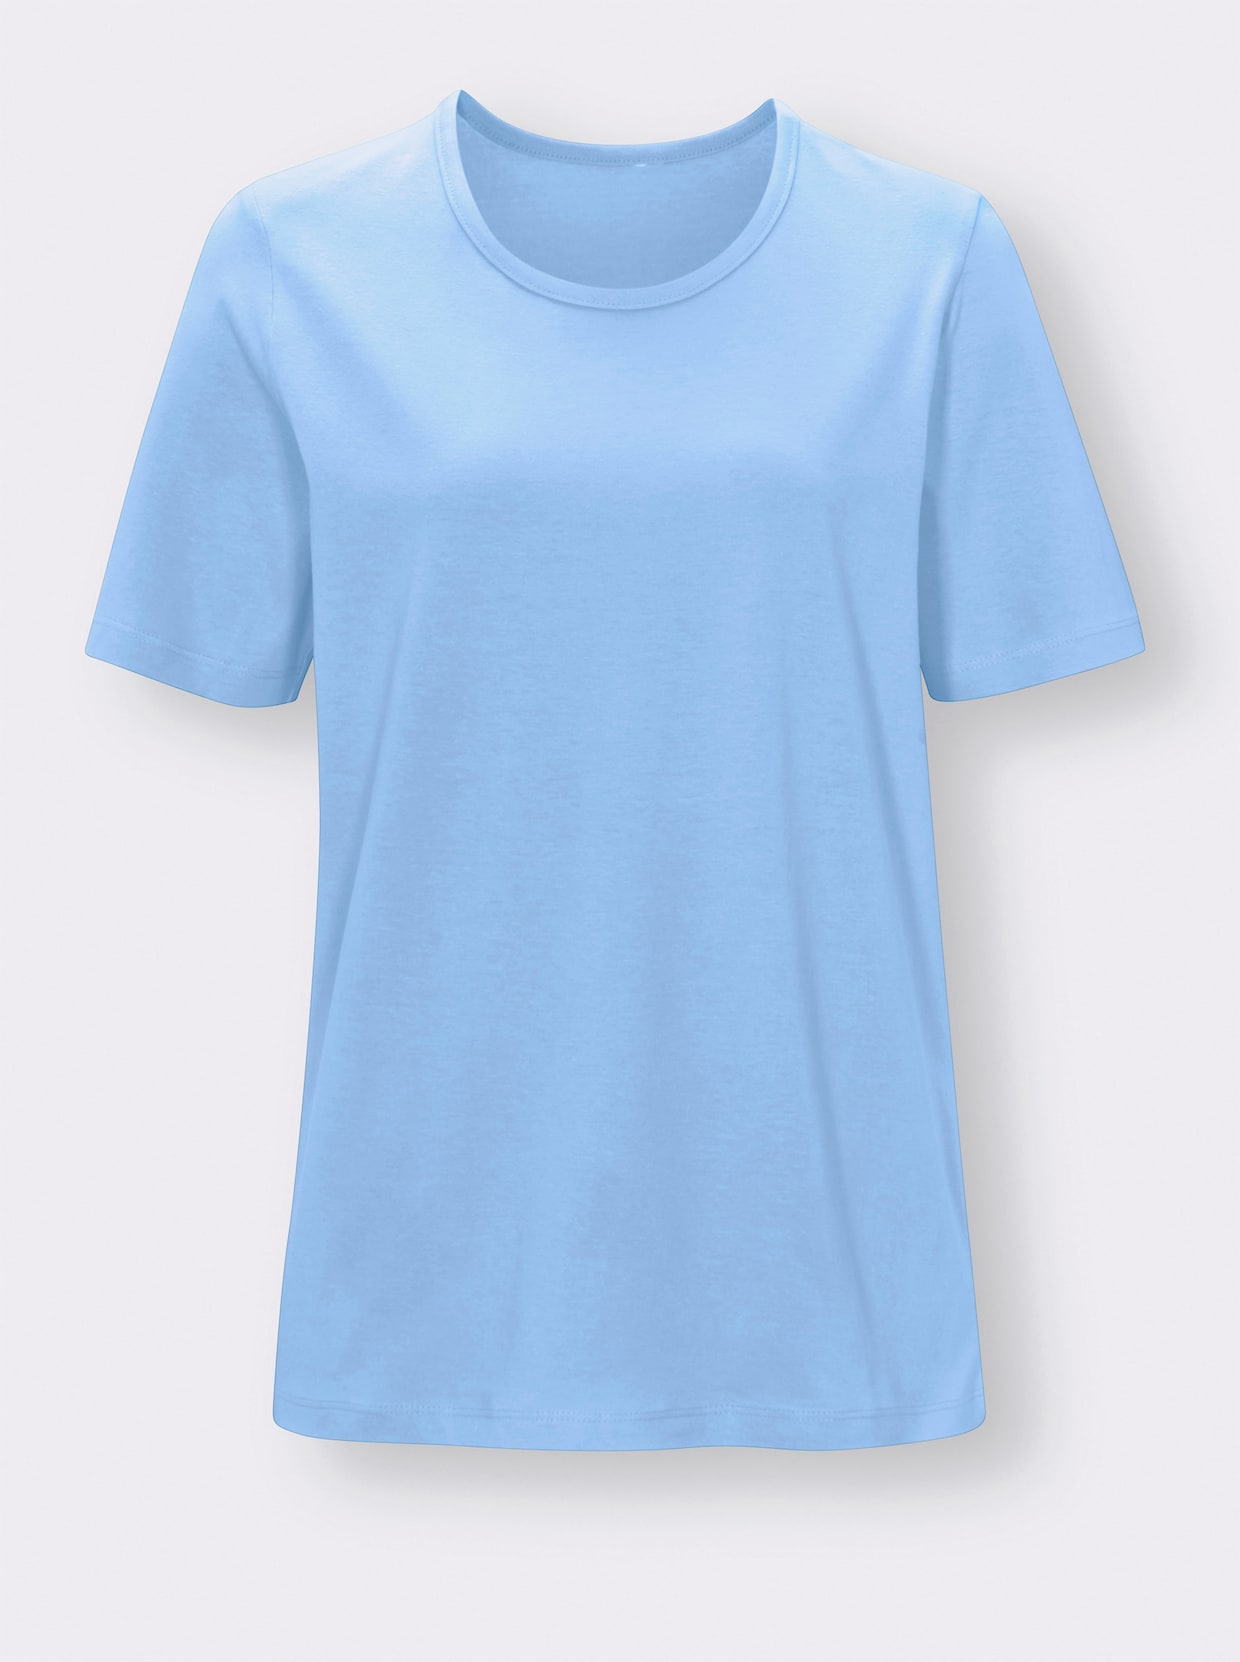 Schlafanzug-Shirt - himmelblau